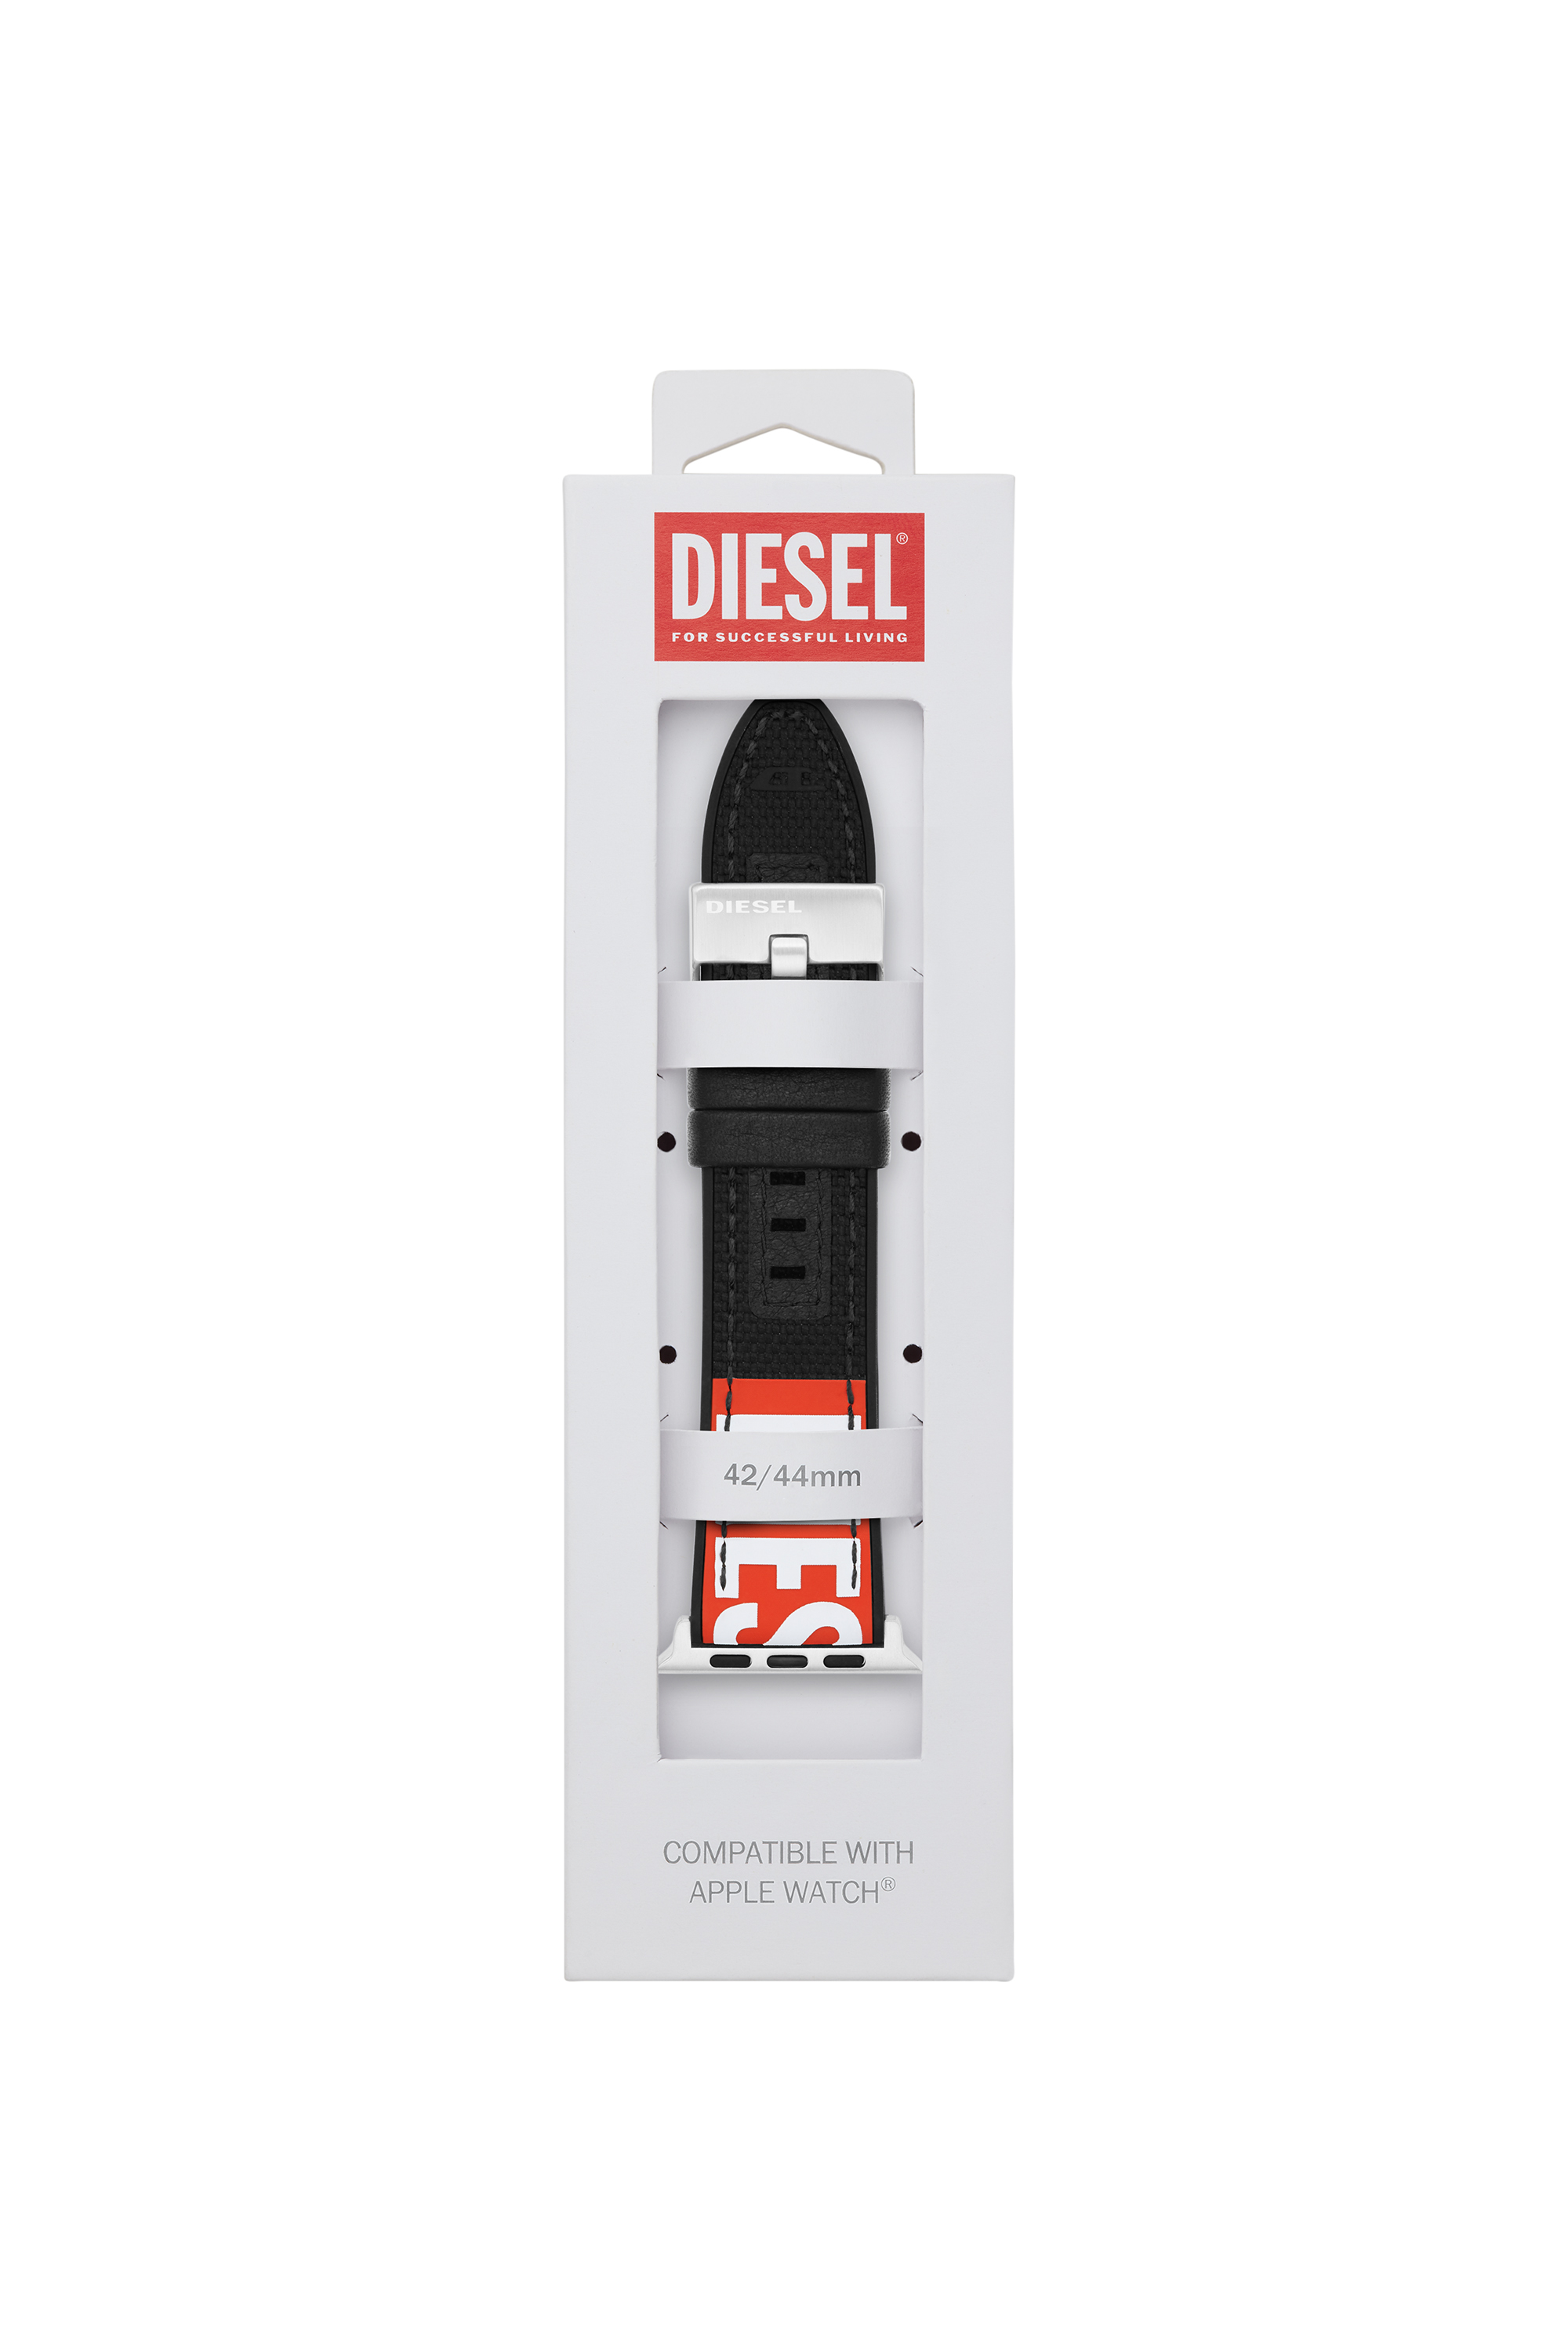 Diesel - DSS005, Noir - Image 2